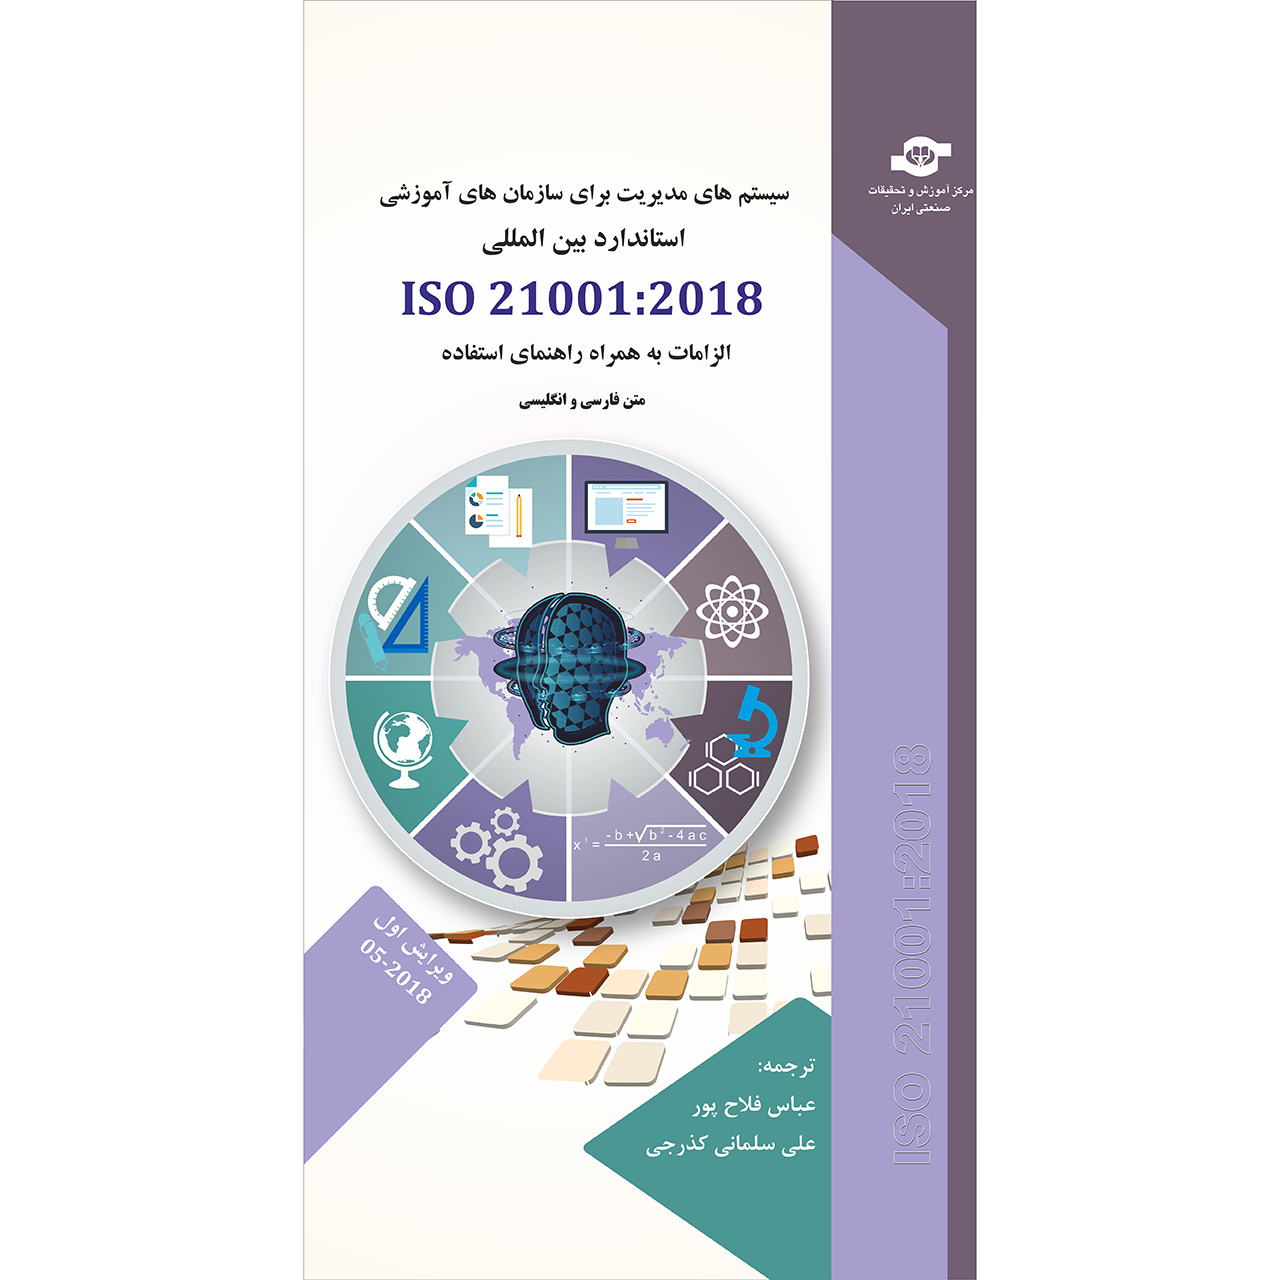 کتاب سیستم های مدیریت برای سازمان های آموزشی ISO 21001:2018 انتشارات مرکز آموزش و تحقیقات صنعتی ایران